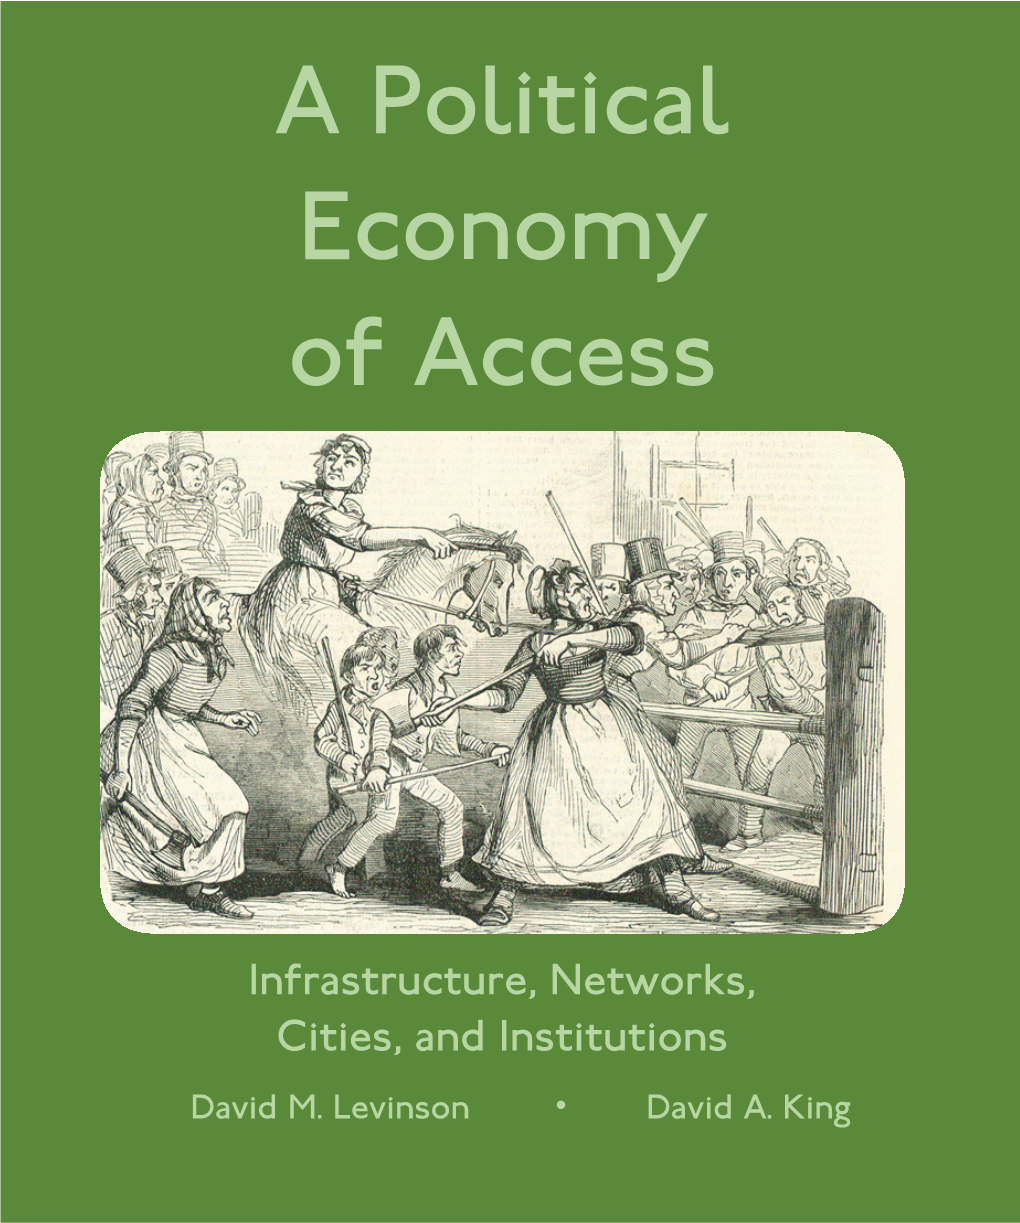 A Political Economy of Access a Political